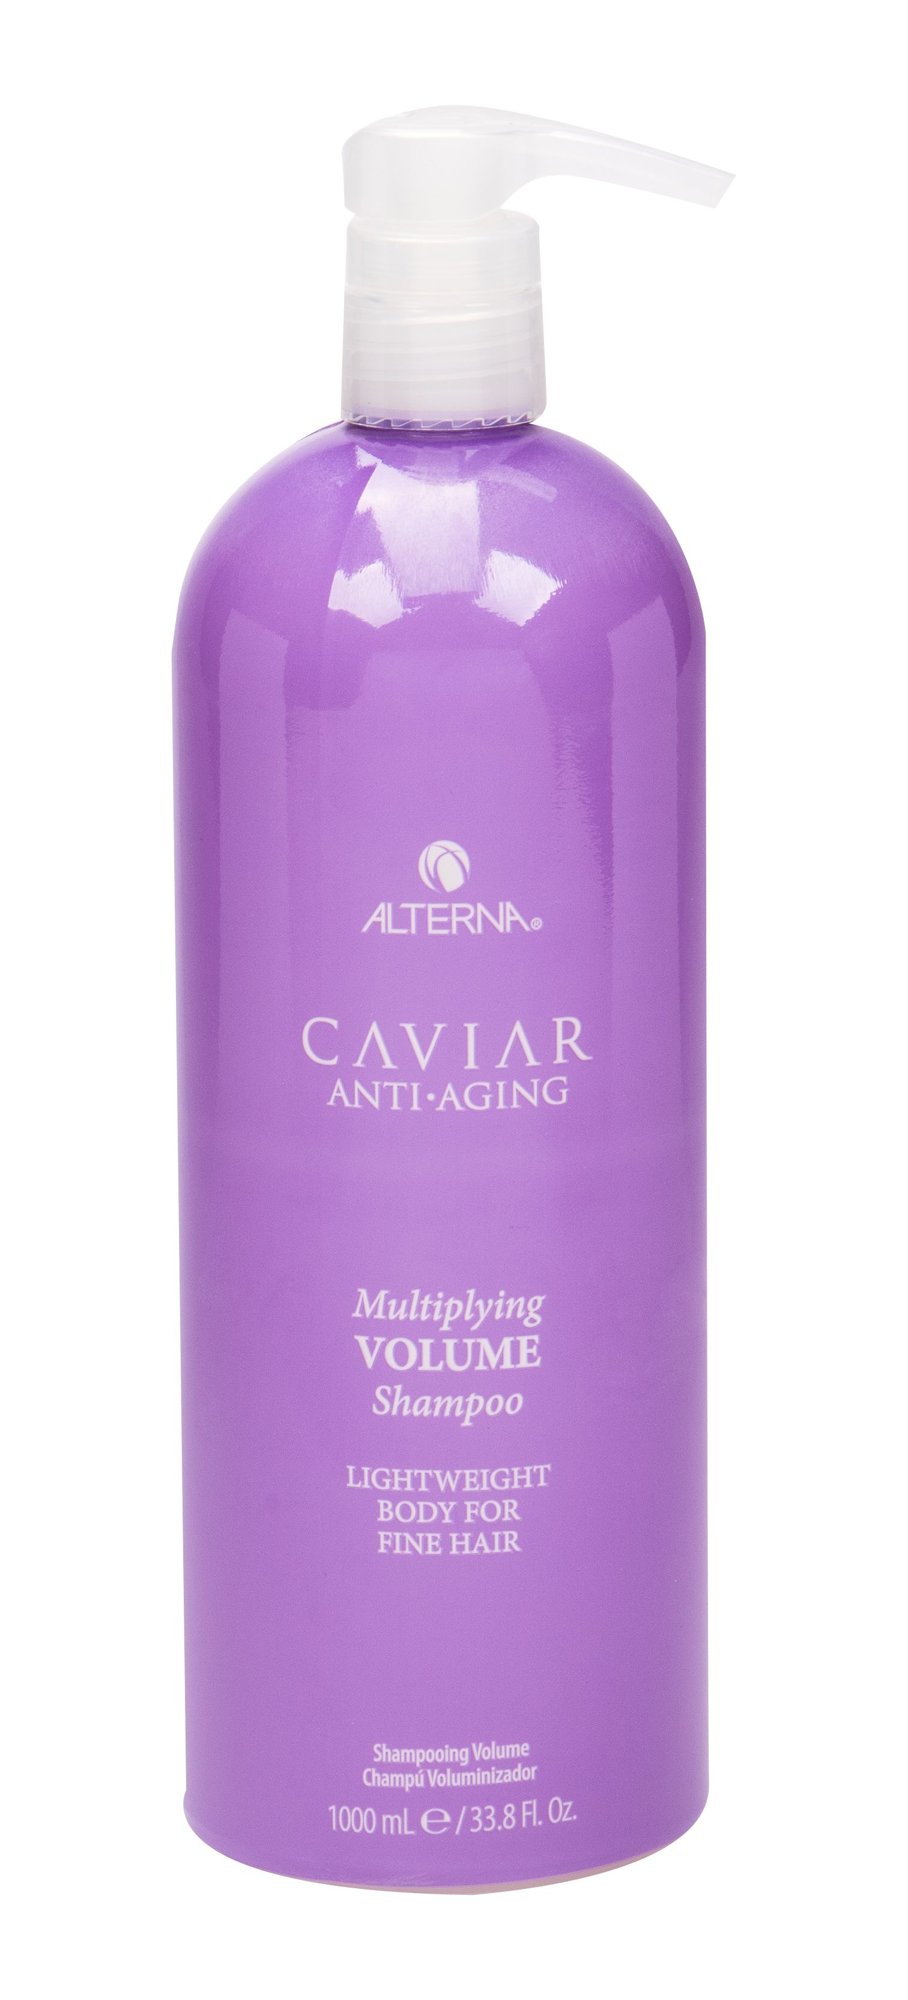 Alterna Caviar Anti-Aging Multiplying Volume 1000ml šampūnas